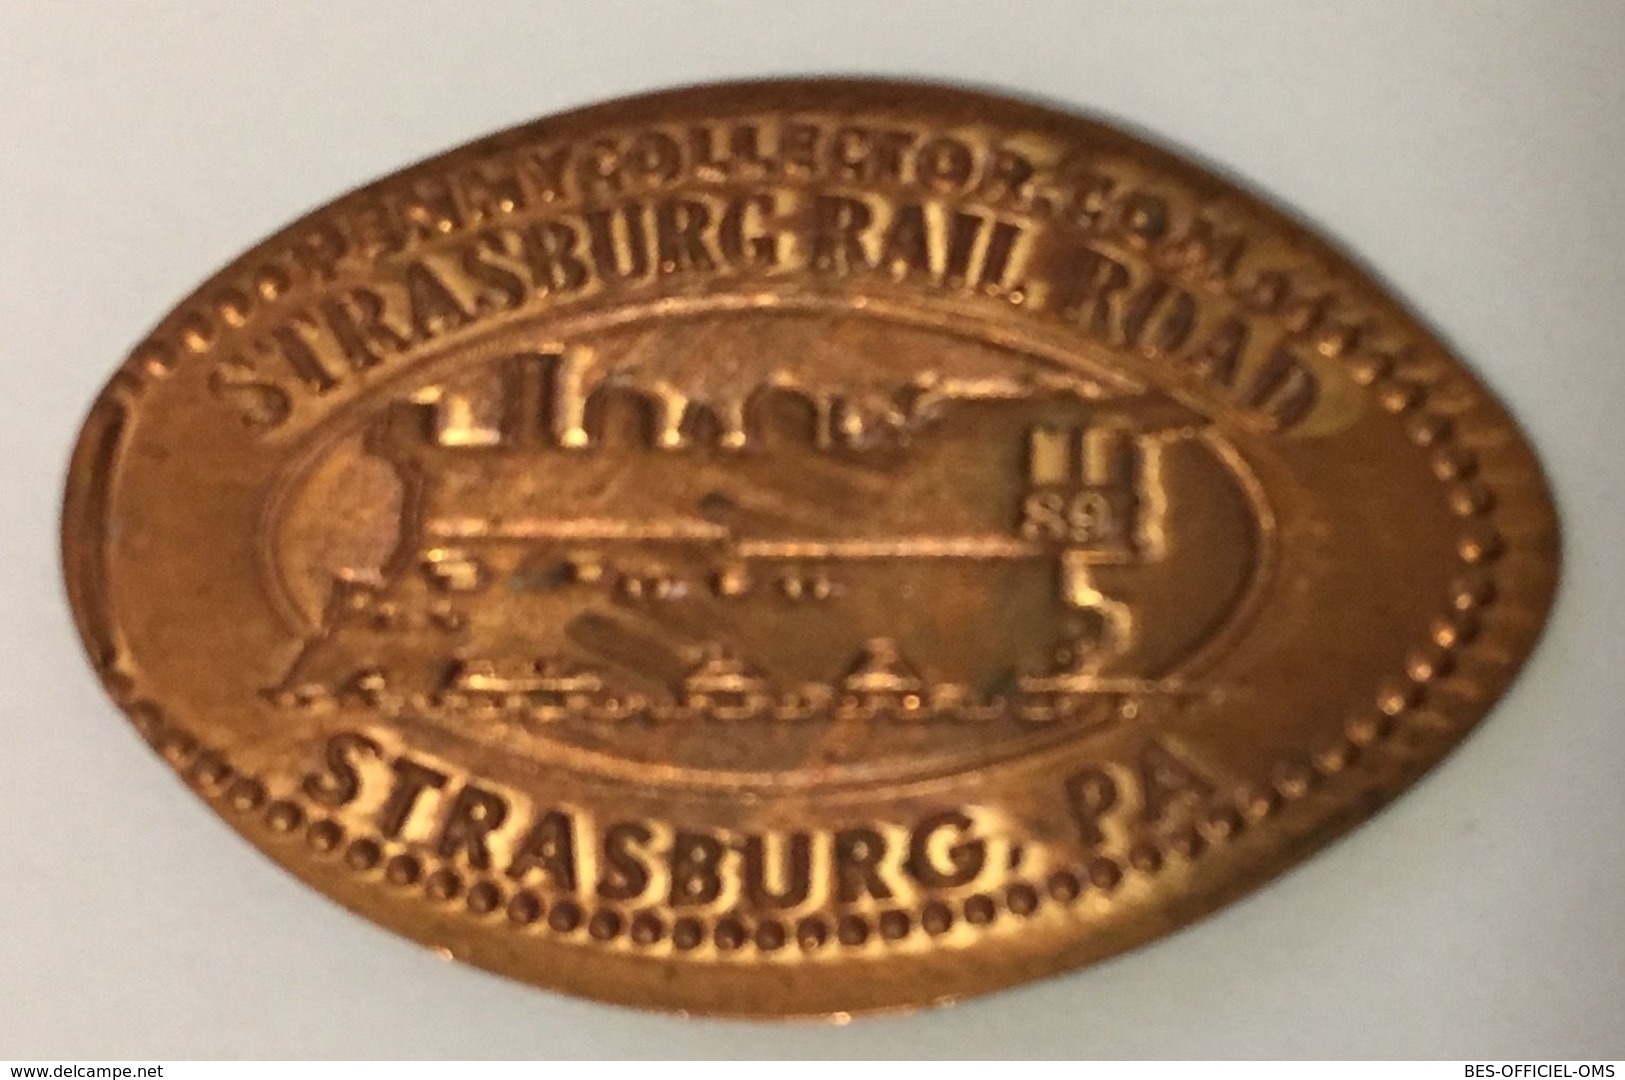 ÉTATS-UNIS USA STRASBURG RAIL ROAD LOCOMOTIVE TRAIN RAILWAY PIÈCE ÉCRASÉE PENNY ELONGATED COIN TOURISTIQUE TOKENS - Elongated Coins